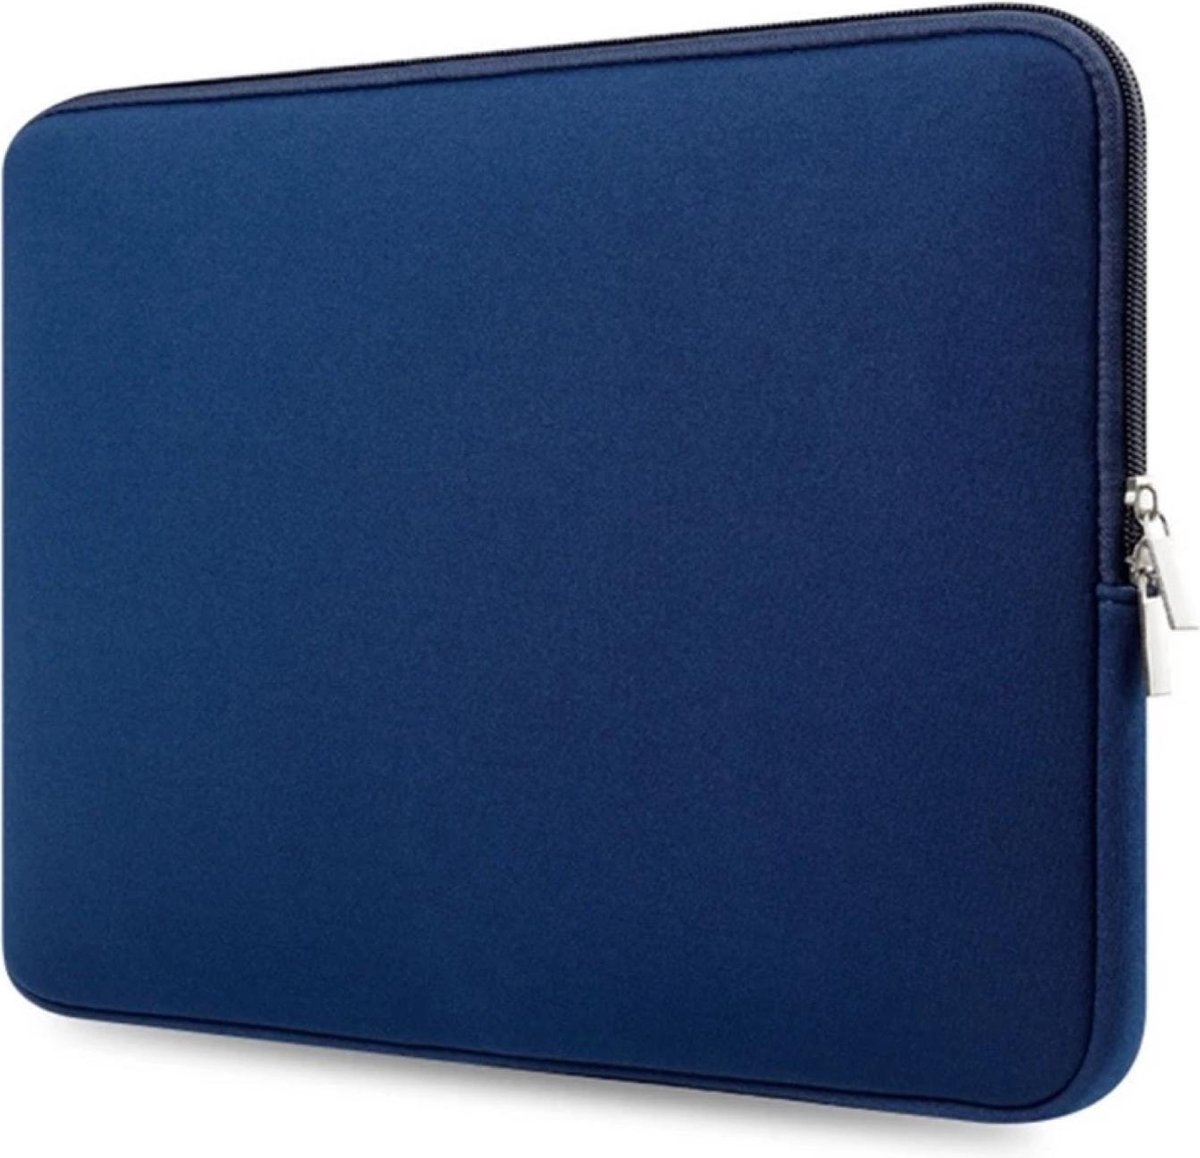 Laptop Sleeve voor Acer Aspire - hoes - extra bescherming Met Ritssluiting - spatwaterbestendig - 14,6 inch ( Blauw )